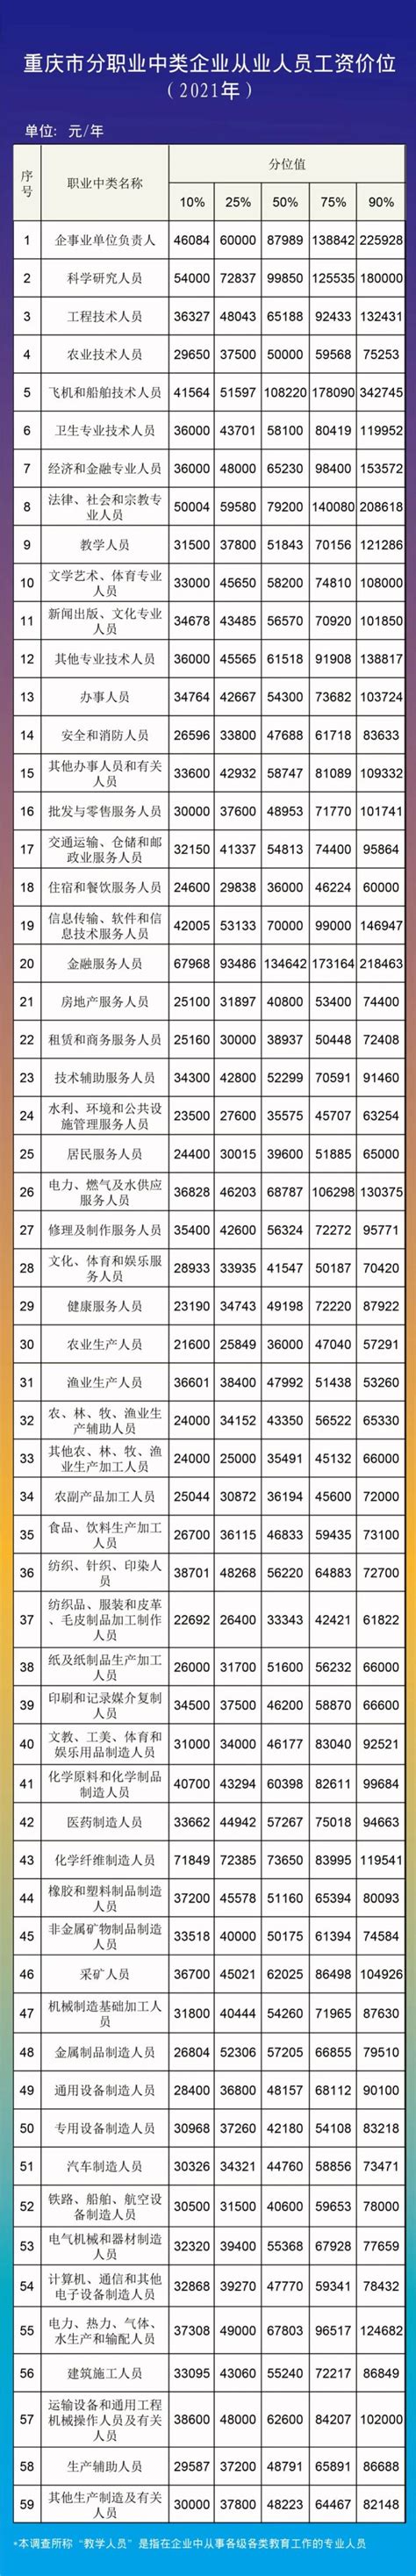 2018年重庆规模以上企业就业人员分岗位年平均工资情况 - 重庆市统计局